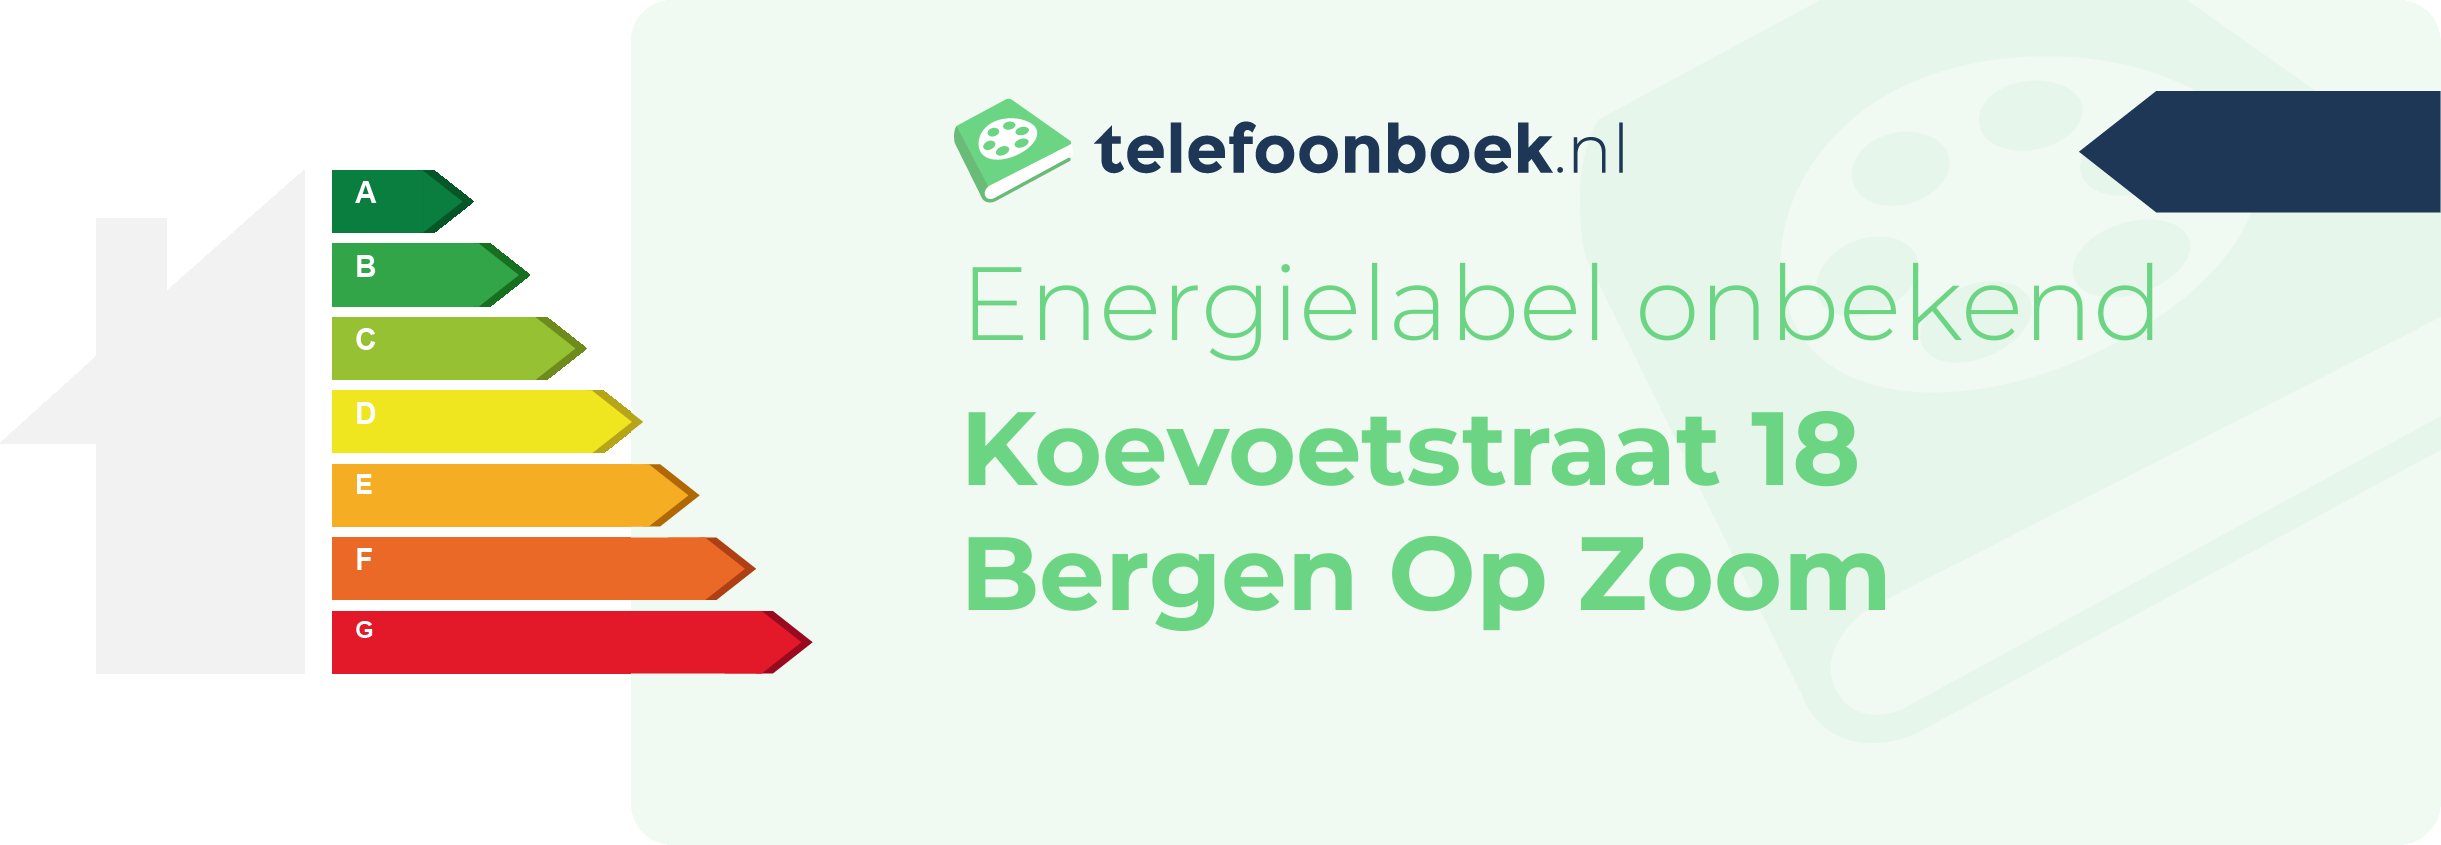 Energielabel Koevoetstraat 18 Bergen Op Zoom